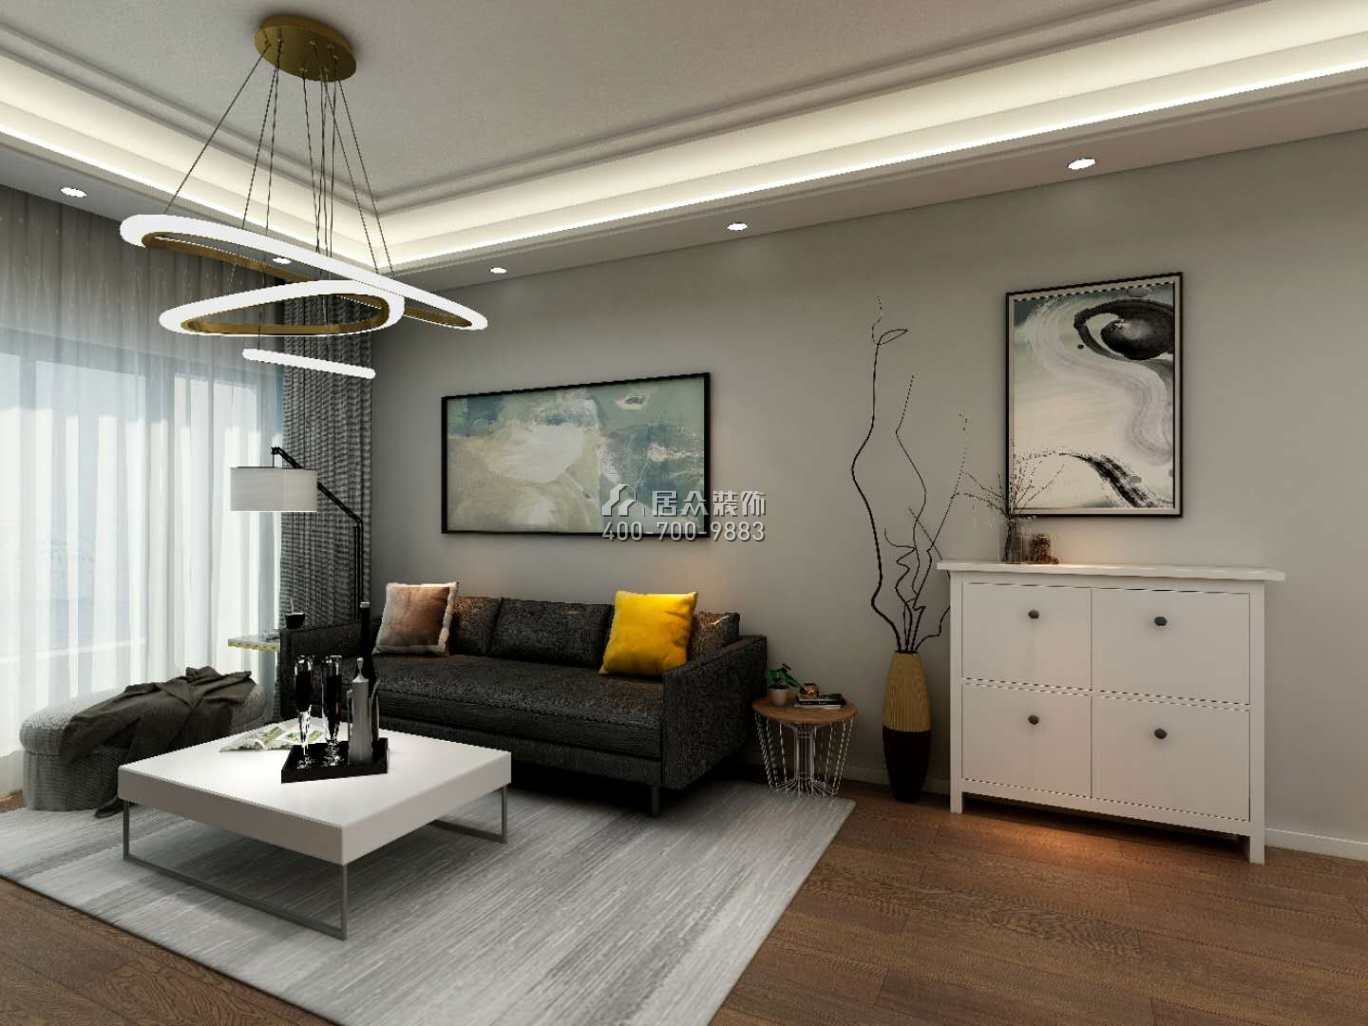 龍光玖龍璽100平方米現代簡約風格平層戶型客廳裝修效果圖